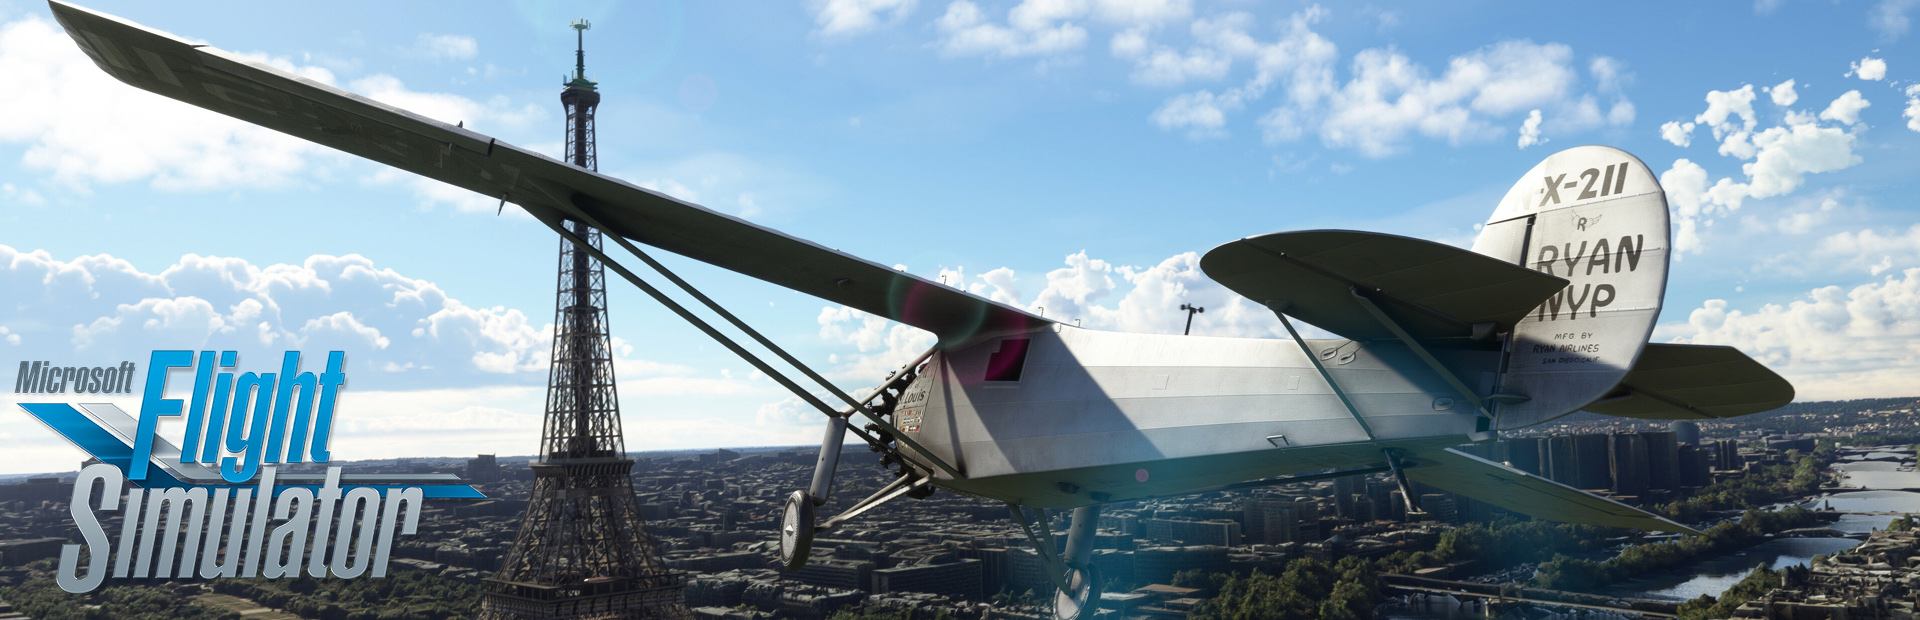 دانلود بازی Microsoft Flight Simulator برای پی سی | گیمباتو